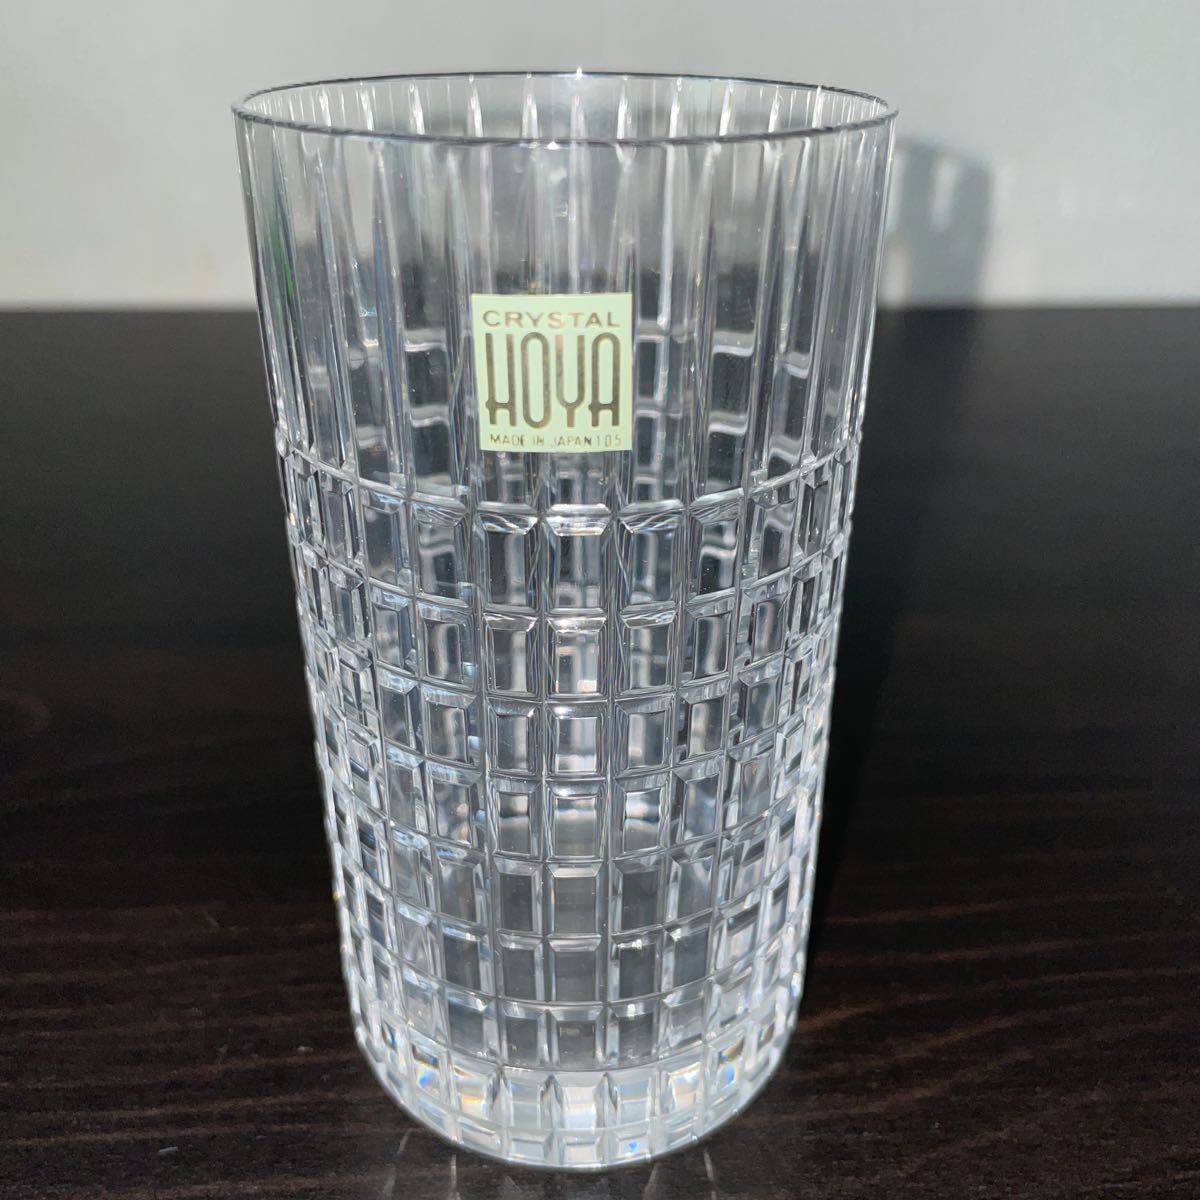  быстрое решение! не использовался #HOYA crystal высококлассный высокий стеклянный стакан 3 шт. комплект # порез . стакан долгое время сохранение товар 